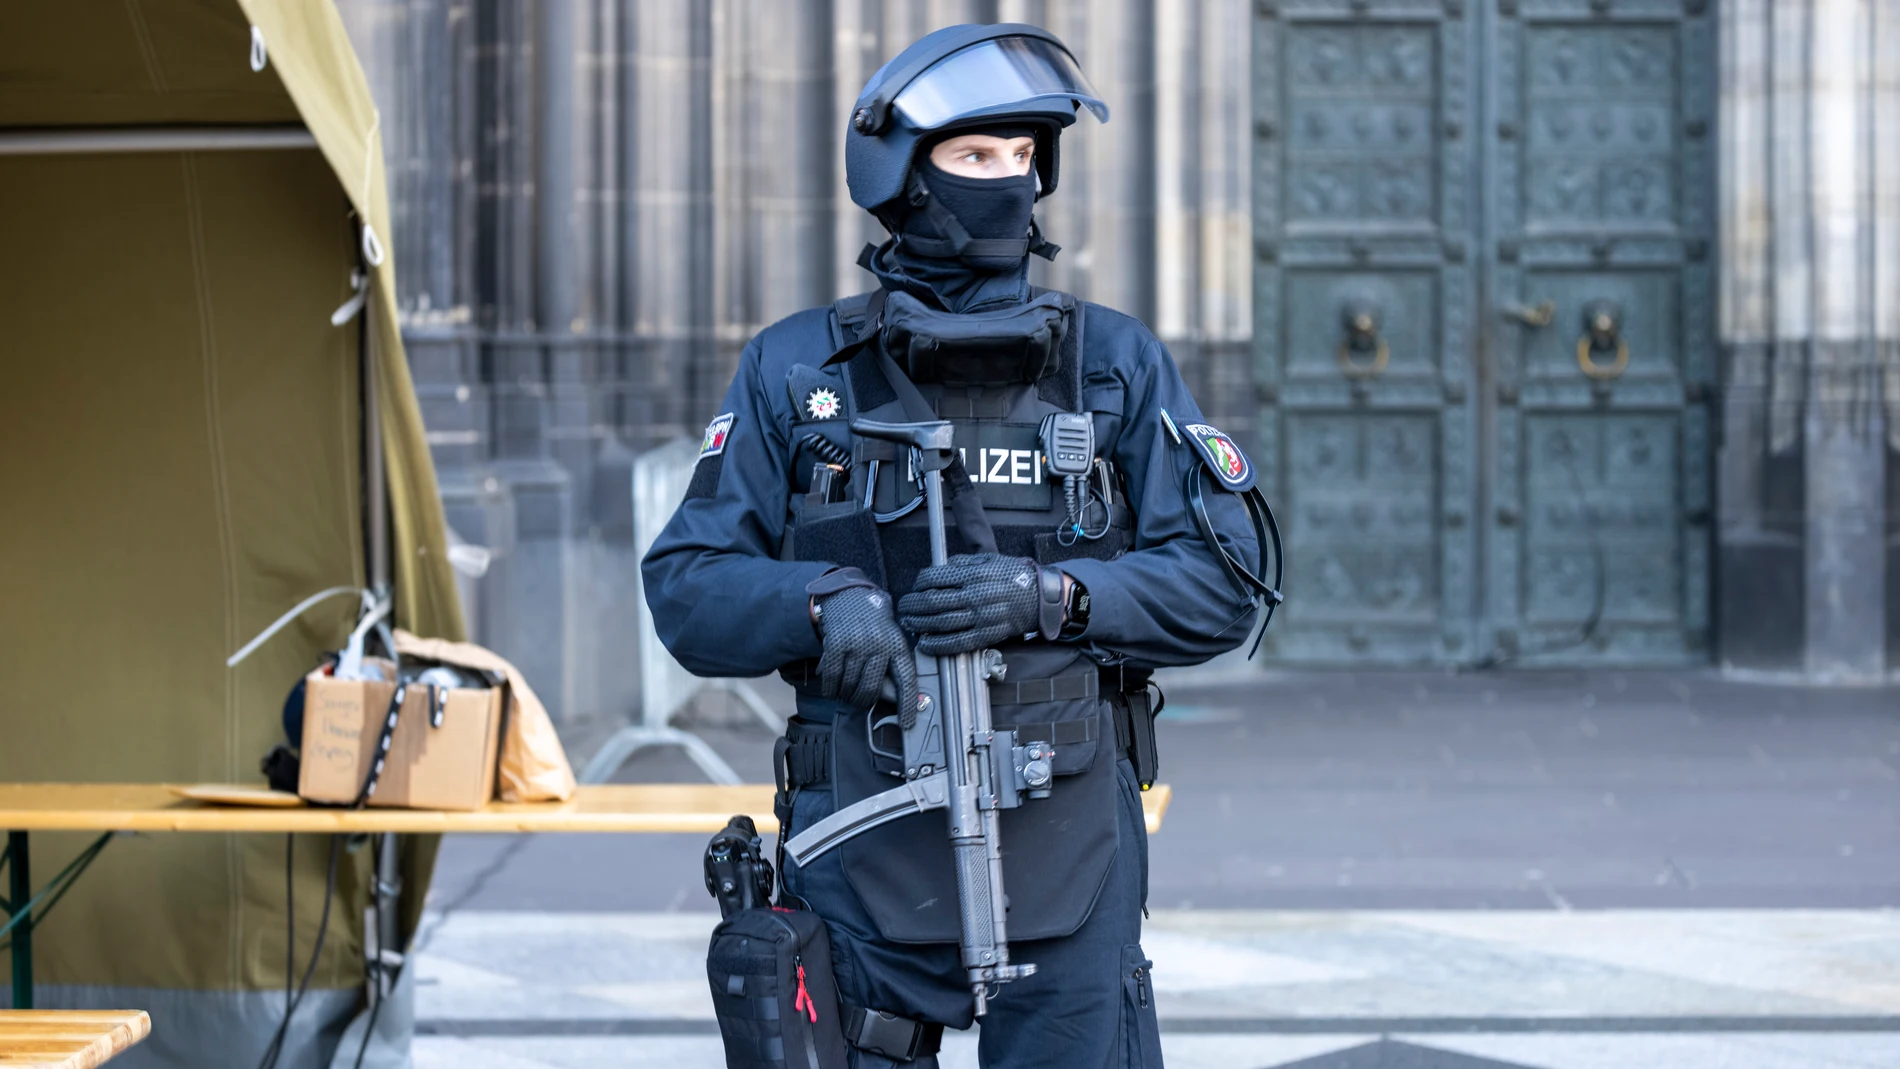 Las autoridades alemanas dicen que han detenido a tres personas más en relación con una supuesta amenaza a la catedral de Colonia durante el período de vacaciones. (Thomas Banneyer/dpa vía AP)